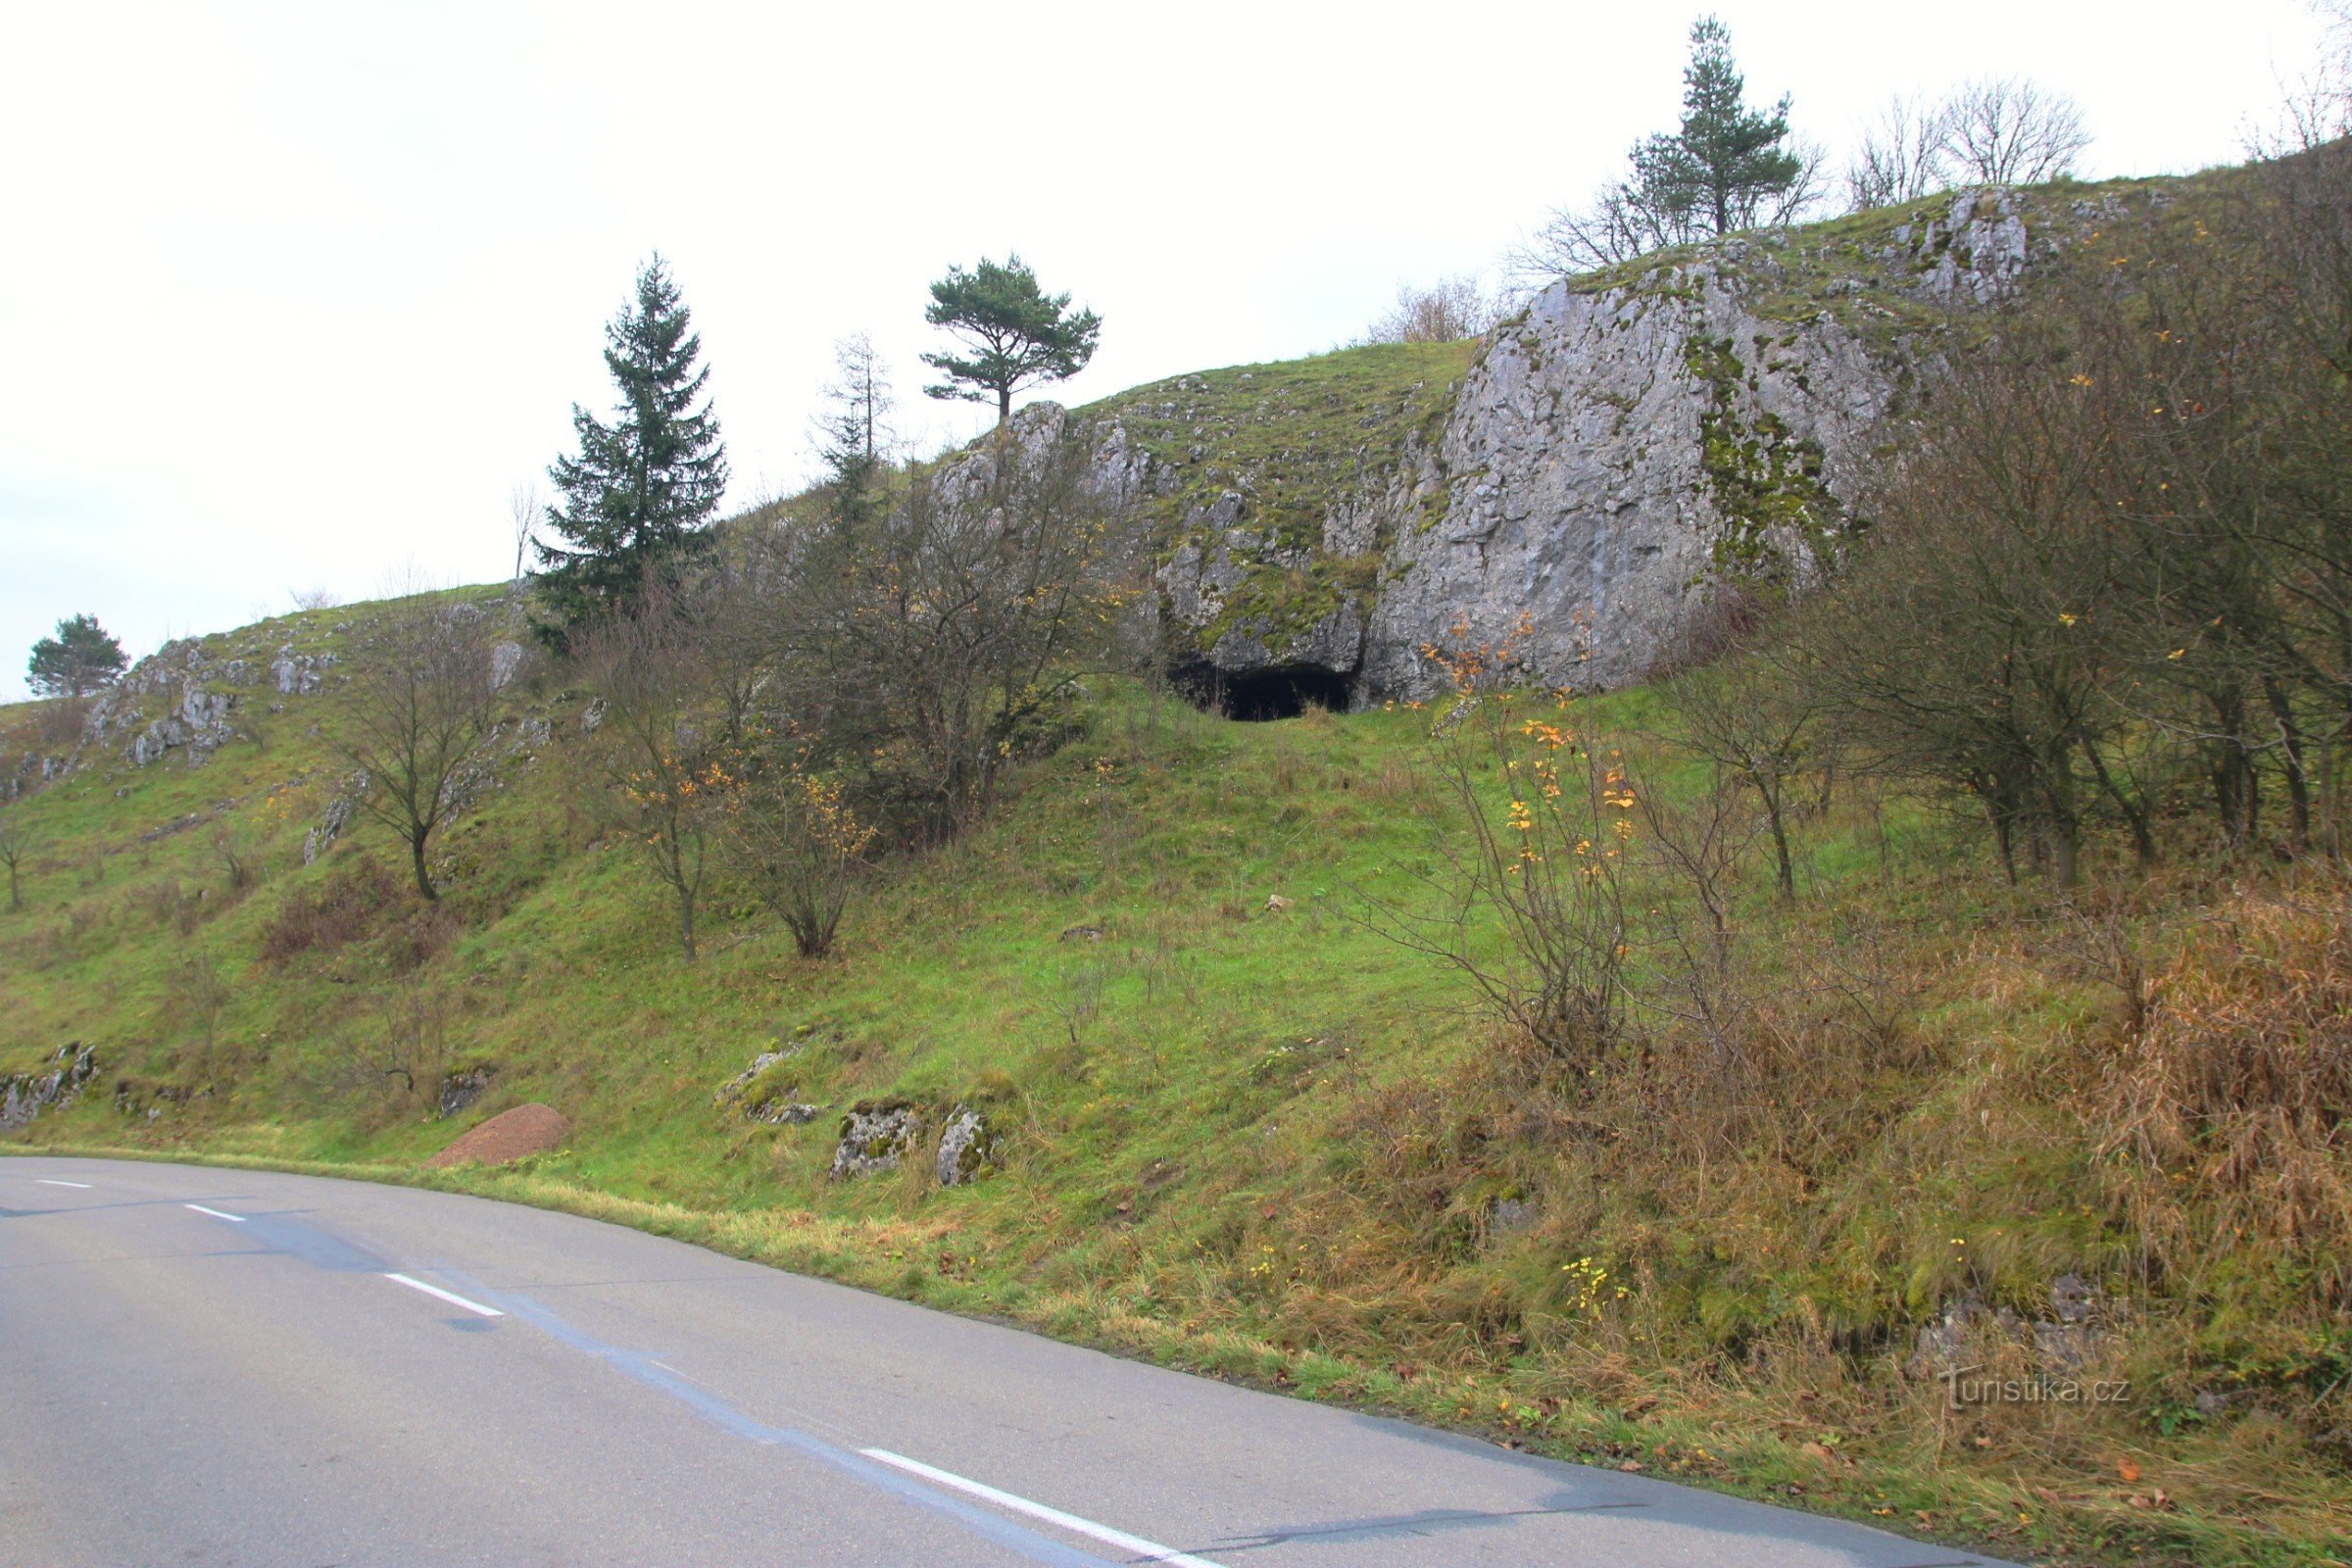 Η είσοδος του σπηλαίου είναι εύκολα ορατή από το δρόμο